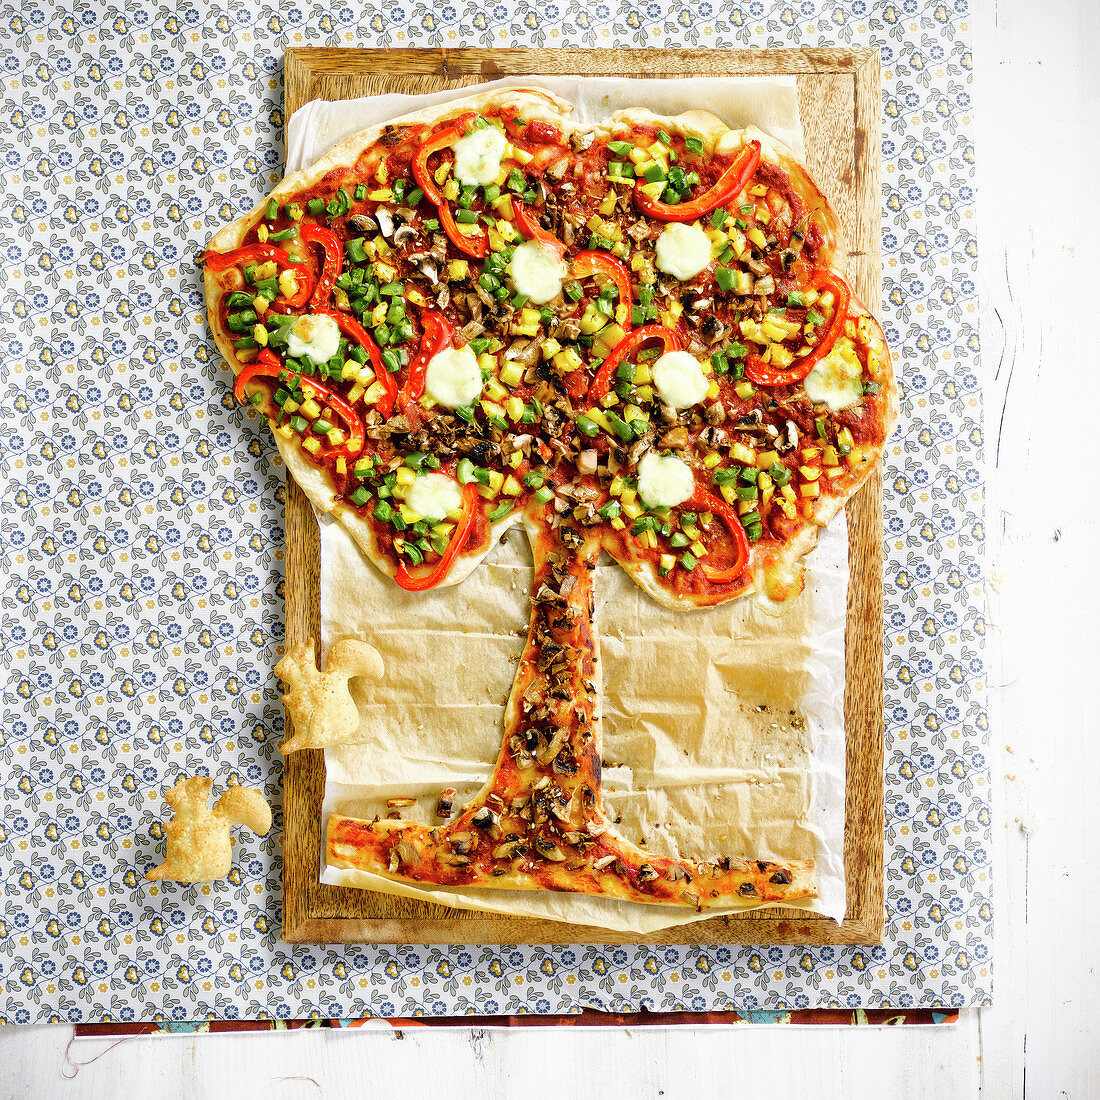 Tree-shaped pizza